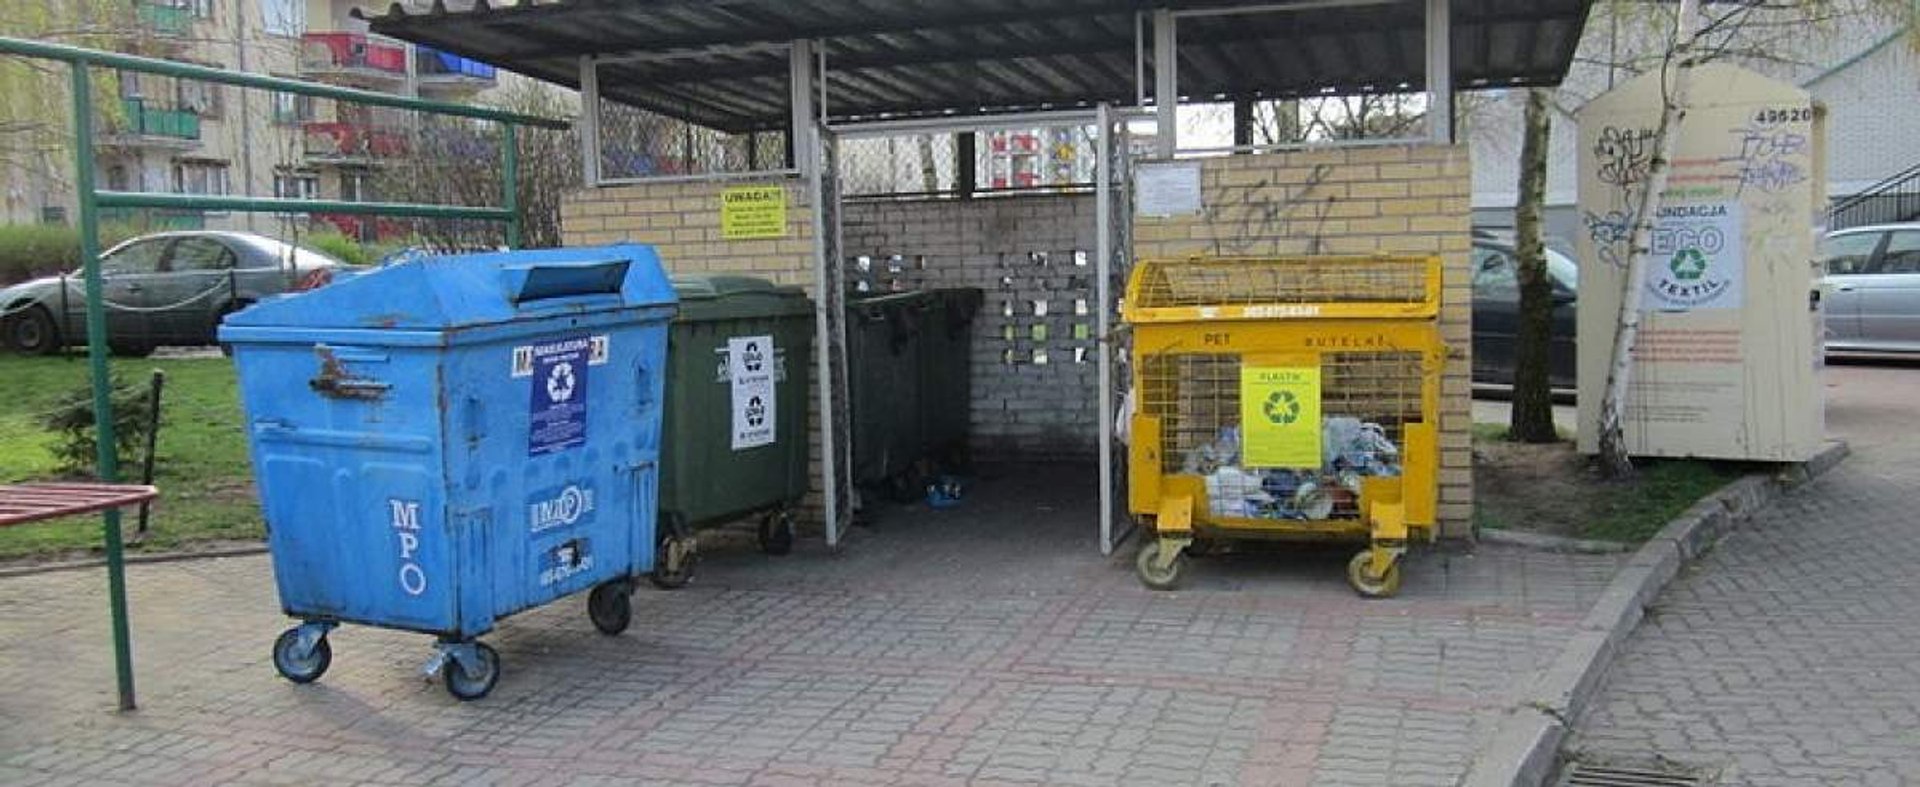 Rząd chce ułatwić segregowanie śmieci